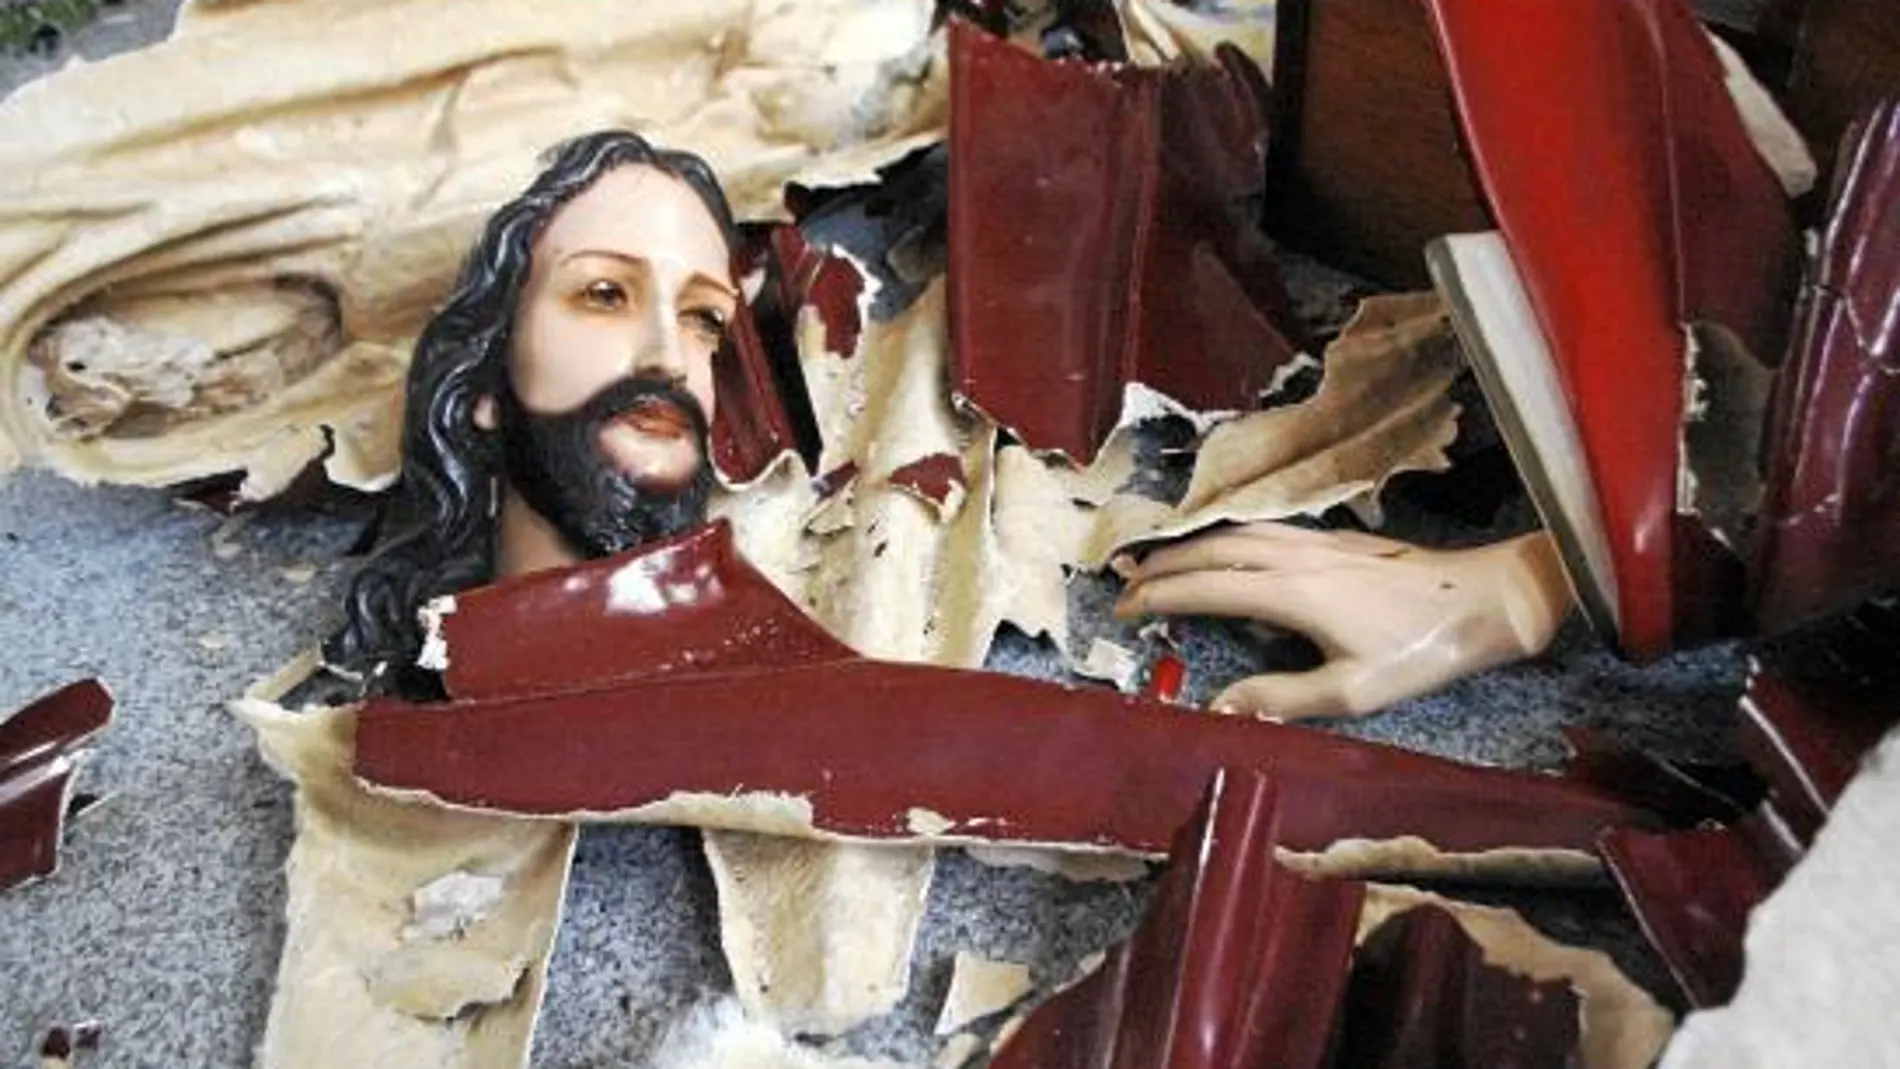 Los atacantes destrozaron mobiliario e imágenes como la de este Cristo durante el asalto